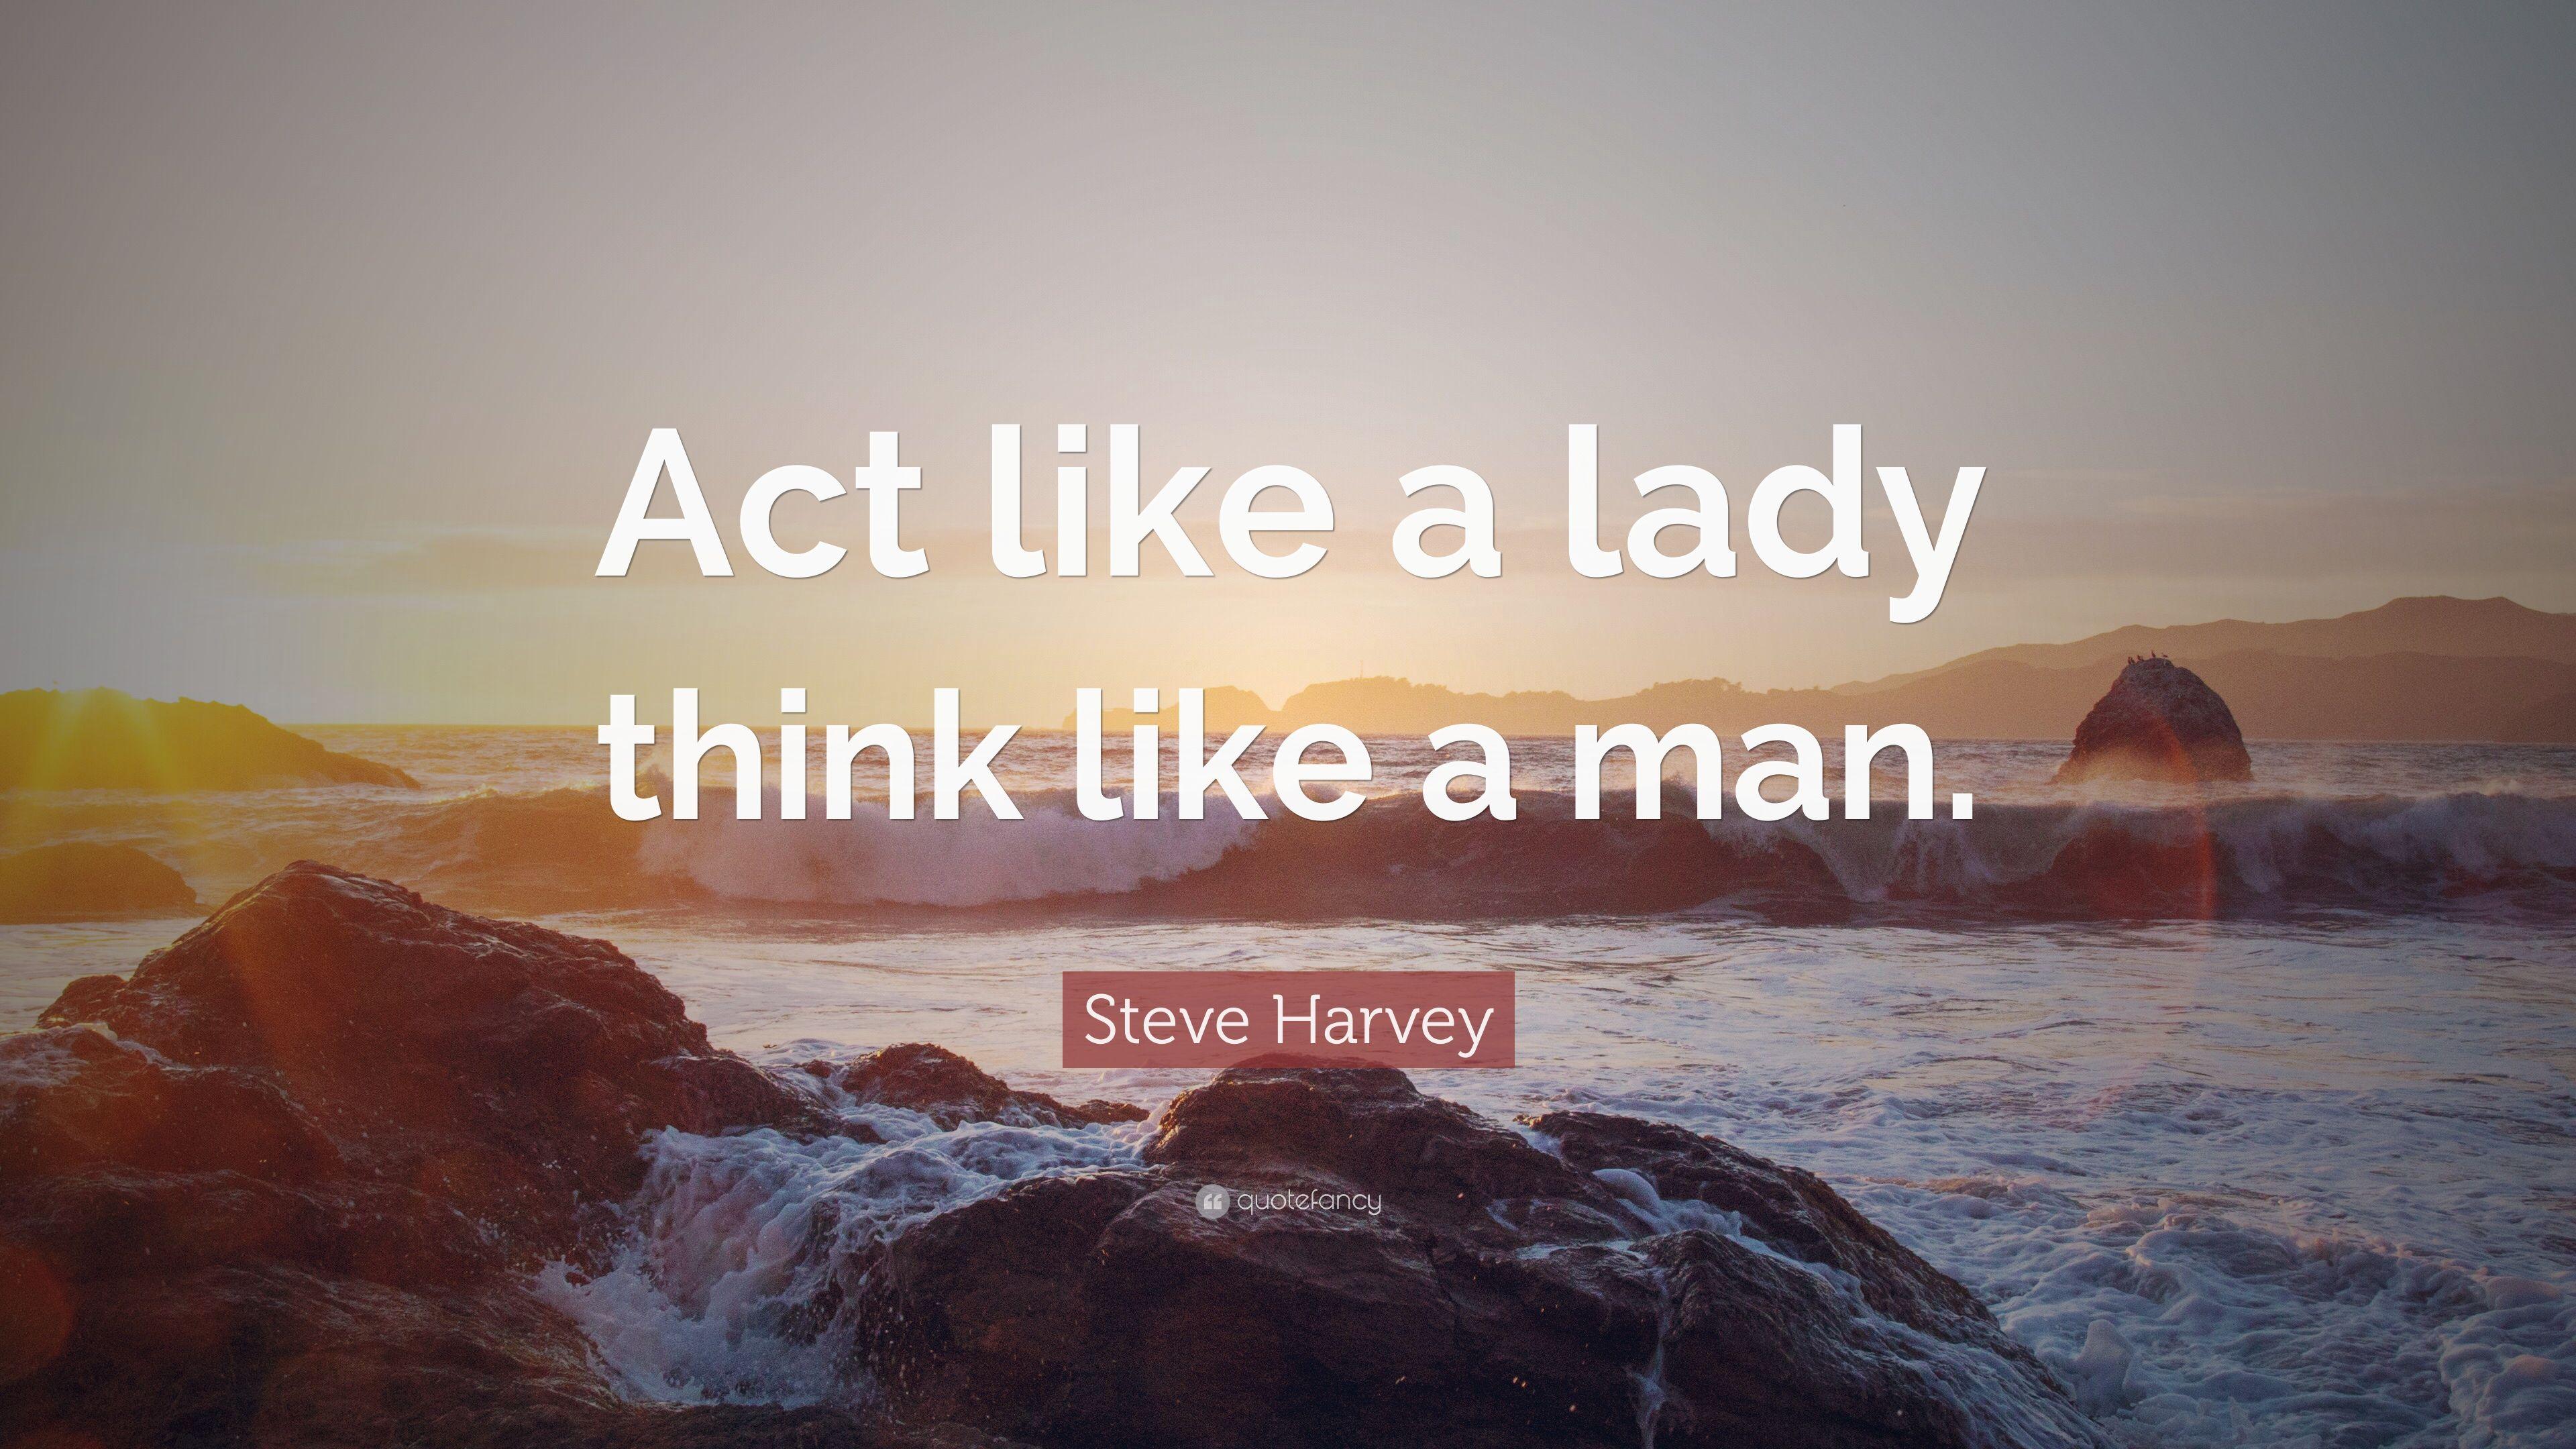 Steve Harvey Quote: “Act like a lady think like a man.” 10